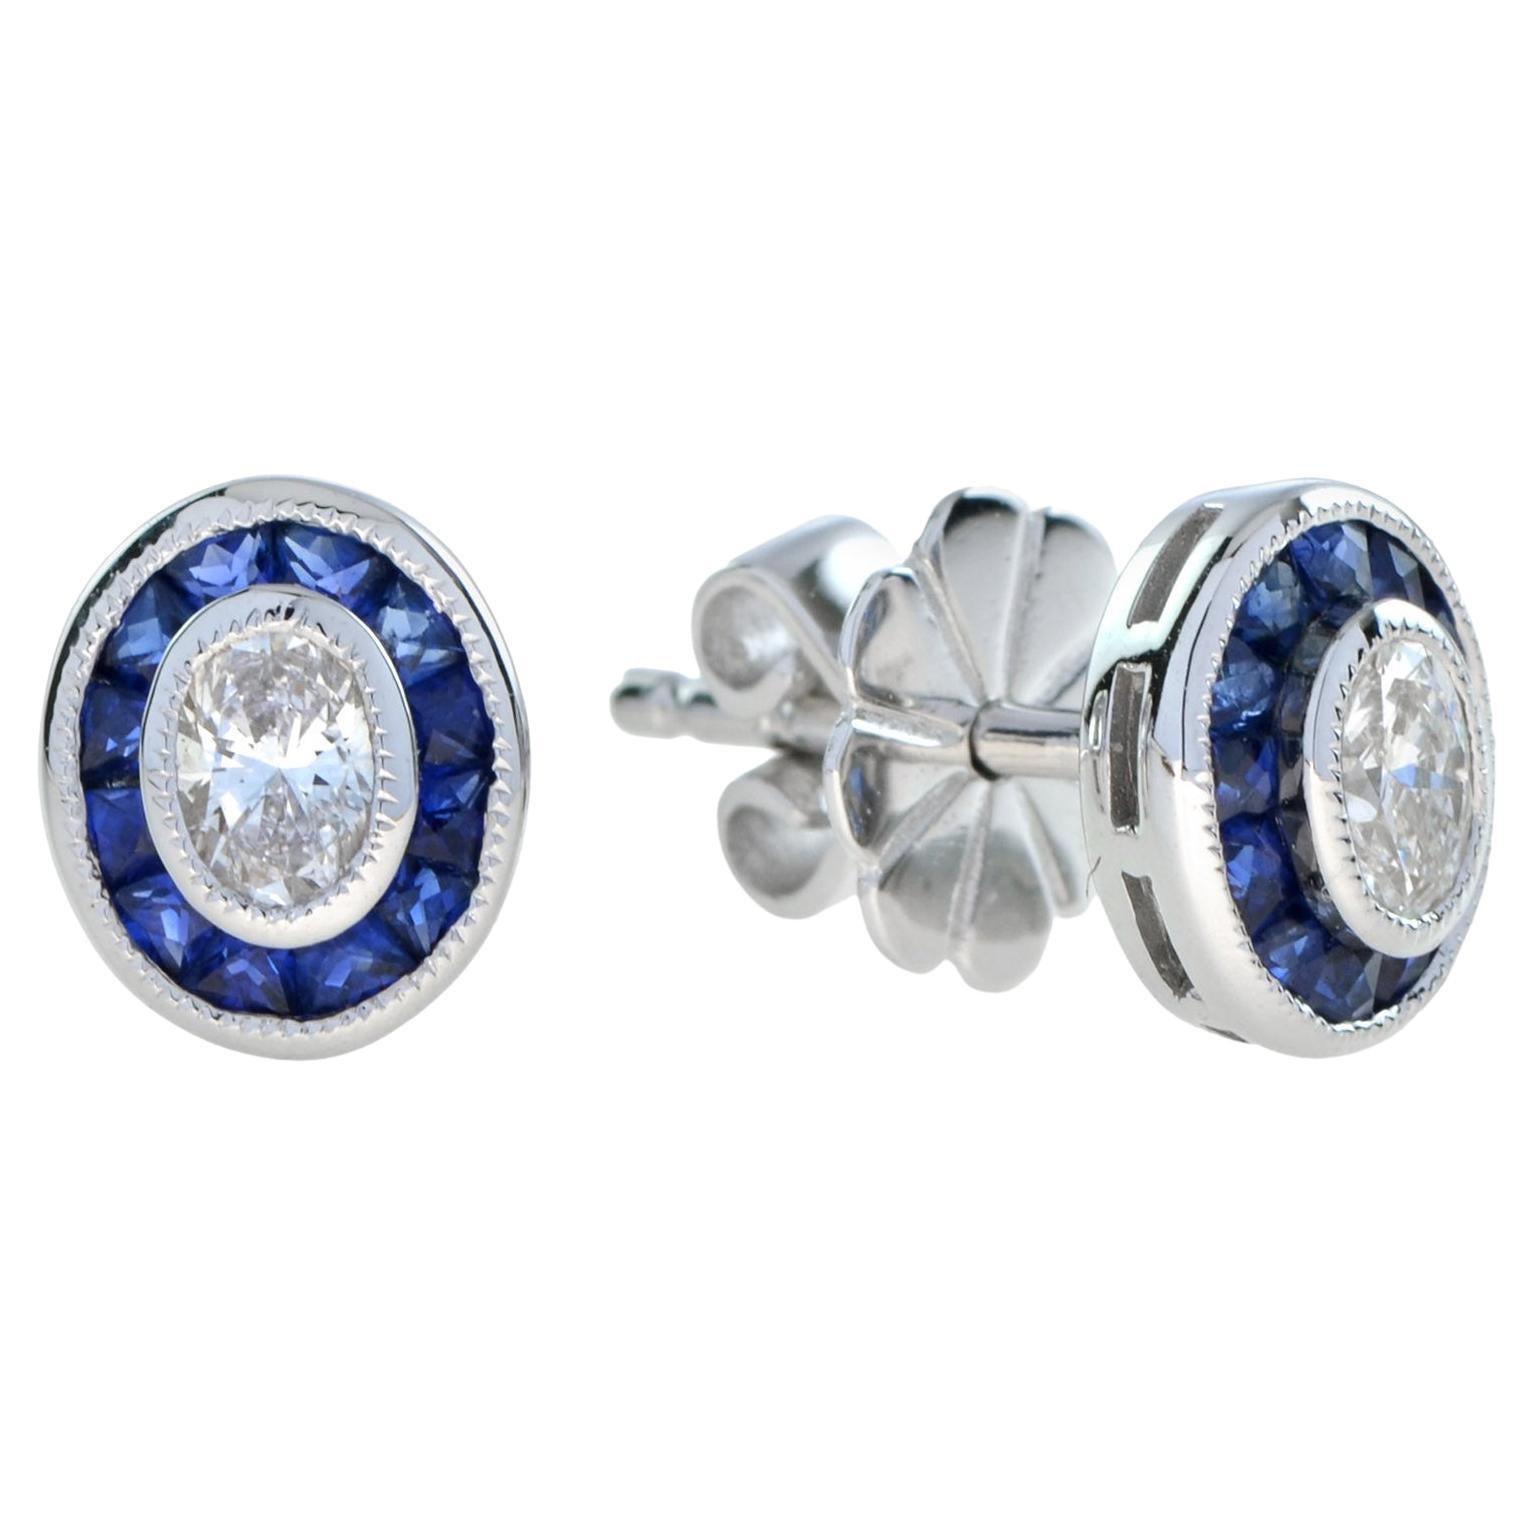 Oval Diamond Blue Sapphire Halo Art Deco Style Stud Earrings in 18K White Gold